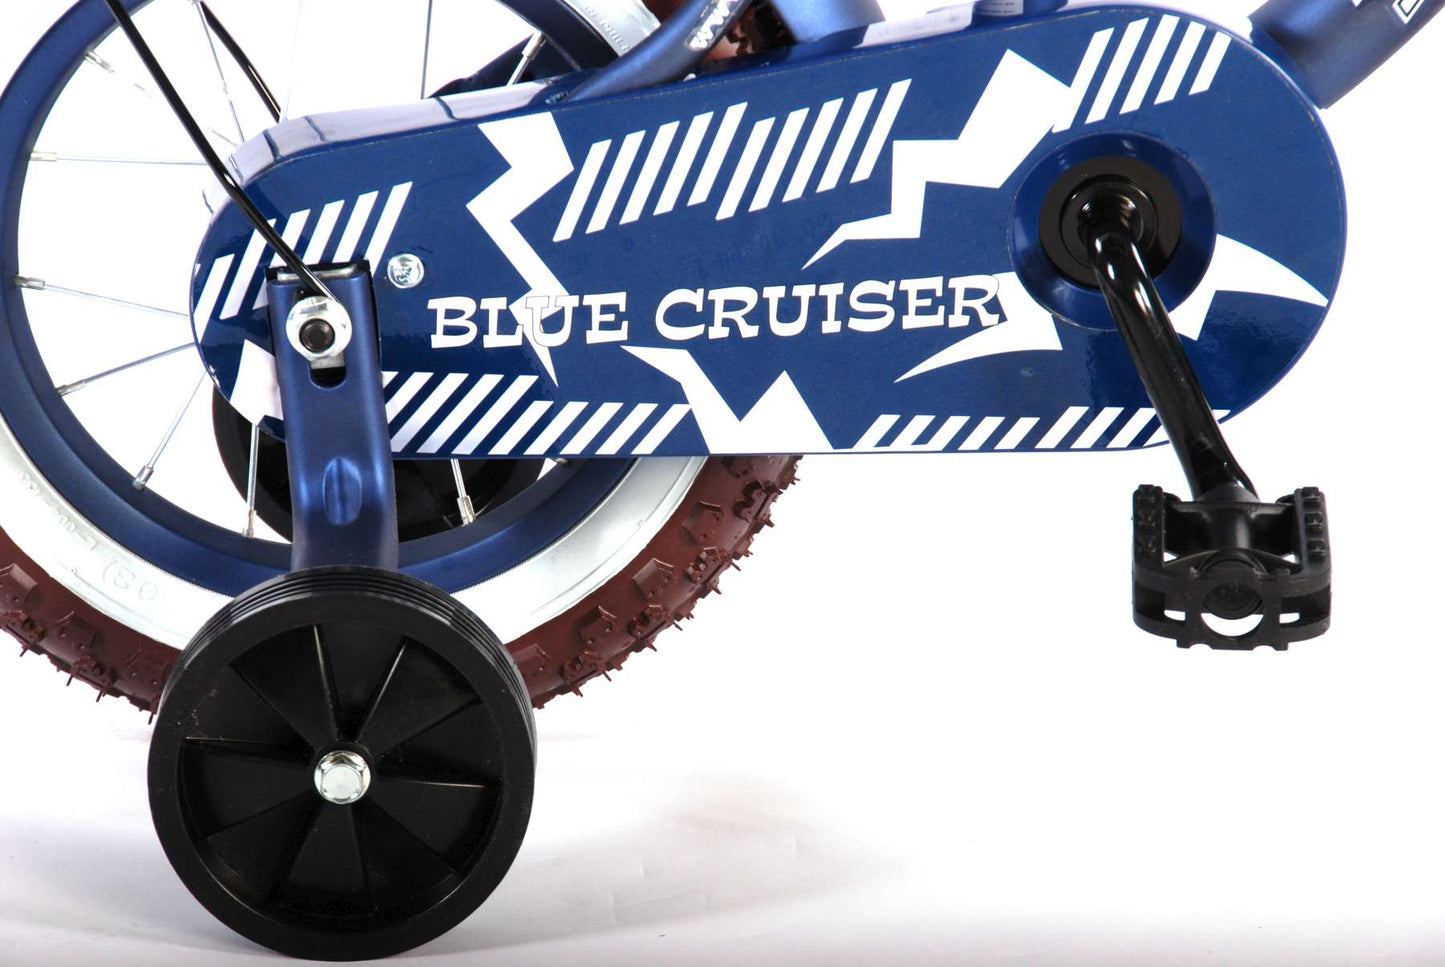 Volare Blue Cruiser Bicycle para niños - Niños - 12 pulgadas - Azul - 95% ensamblado